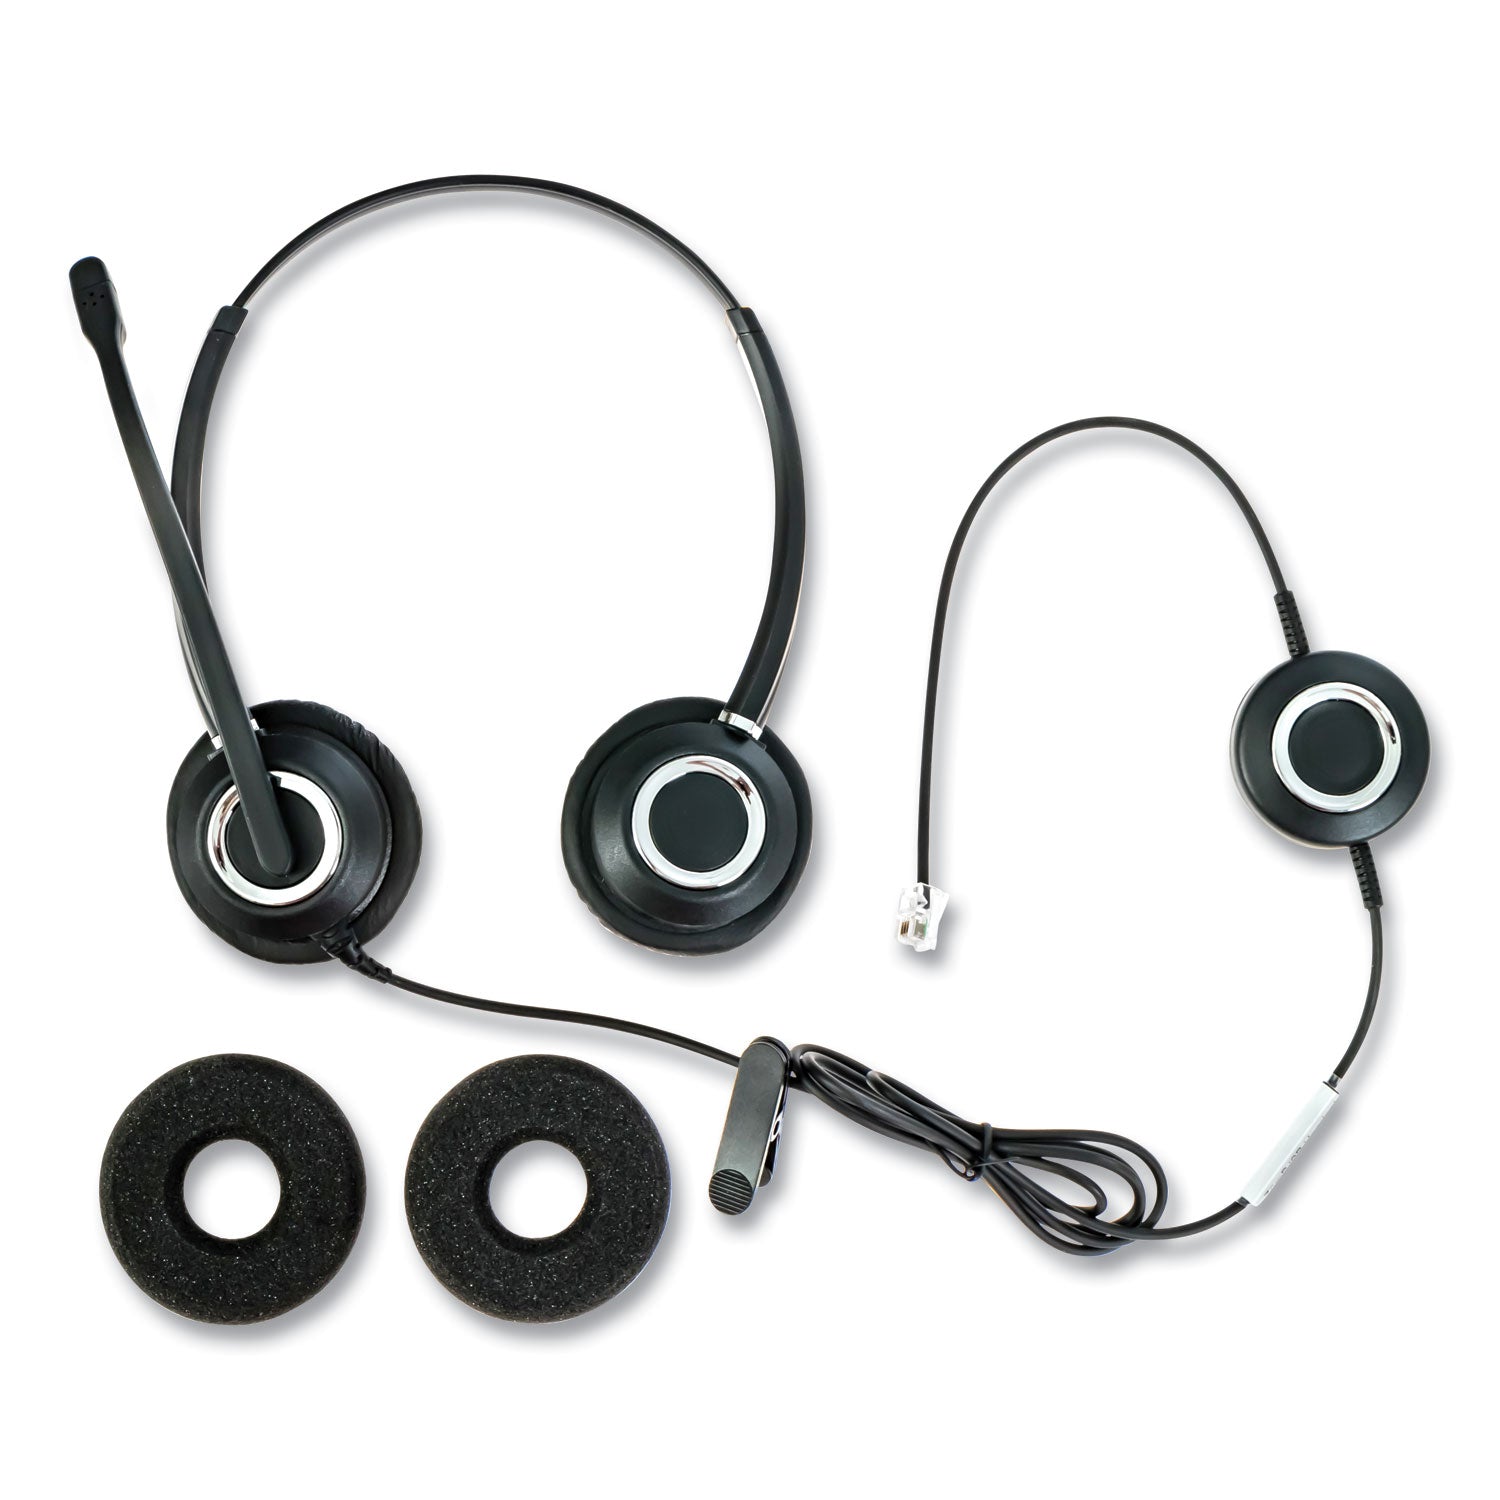 zum-zumrj9b-binaural-over-the-head-headset-black_sptzumrj9b - 1